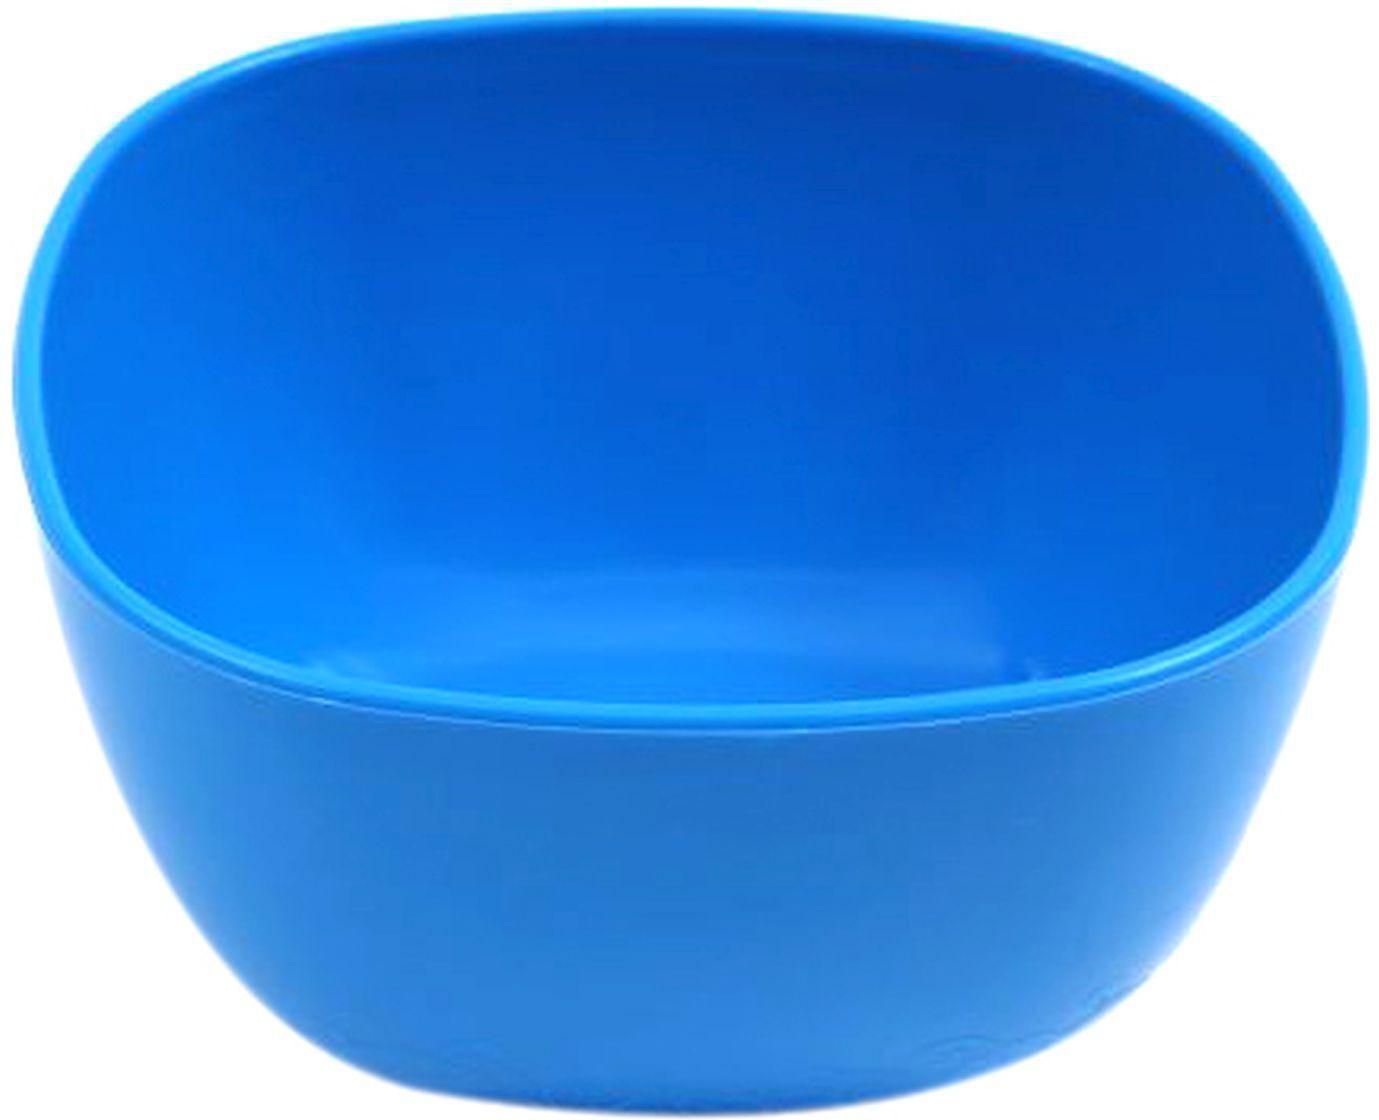 M-Design Eden Basics Salad Bowl - Blue